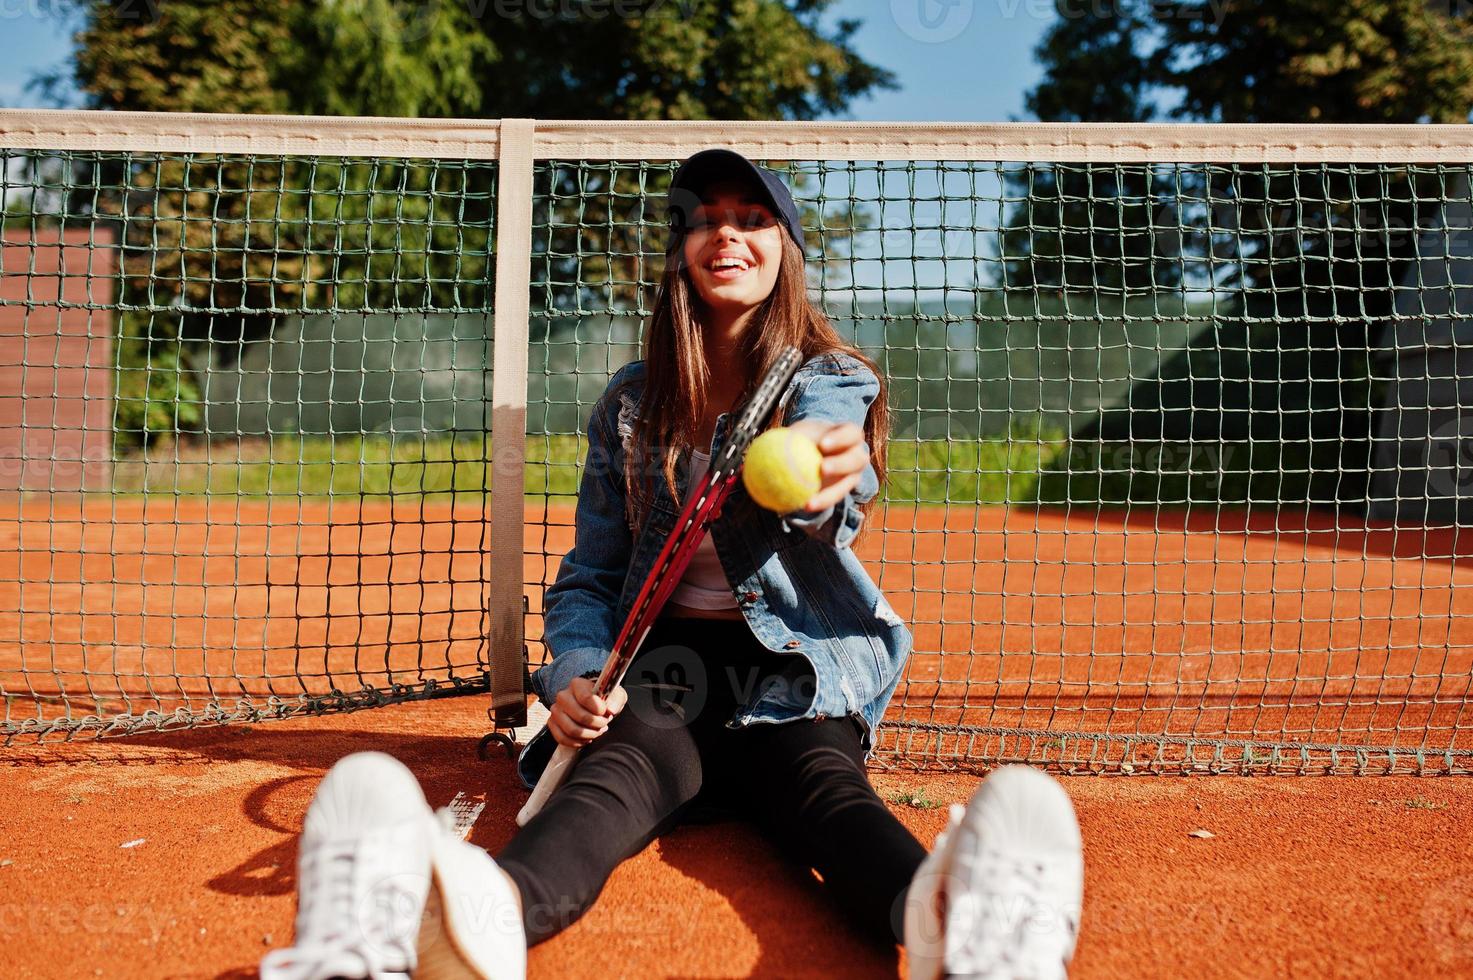 joven jugadora deportiva con raqueta de tenis en la cancha de tenis. foto